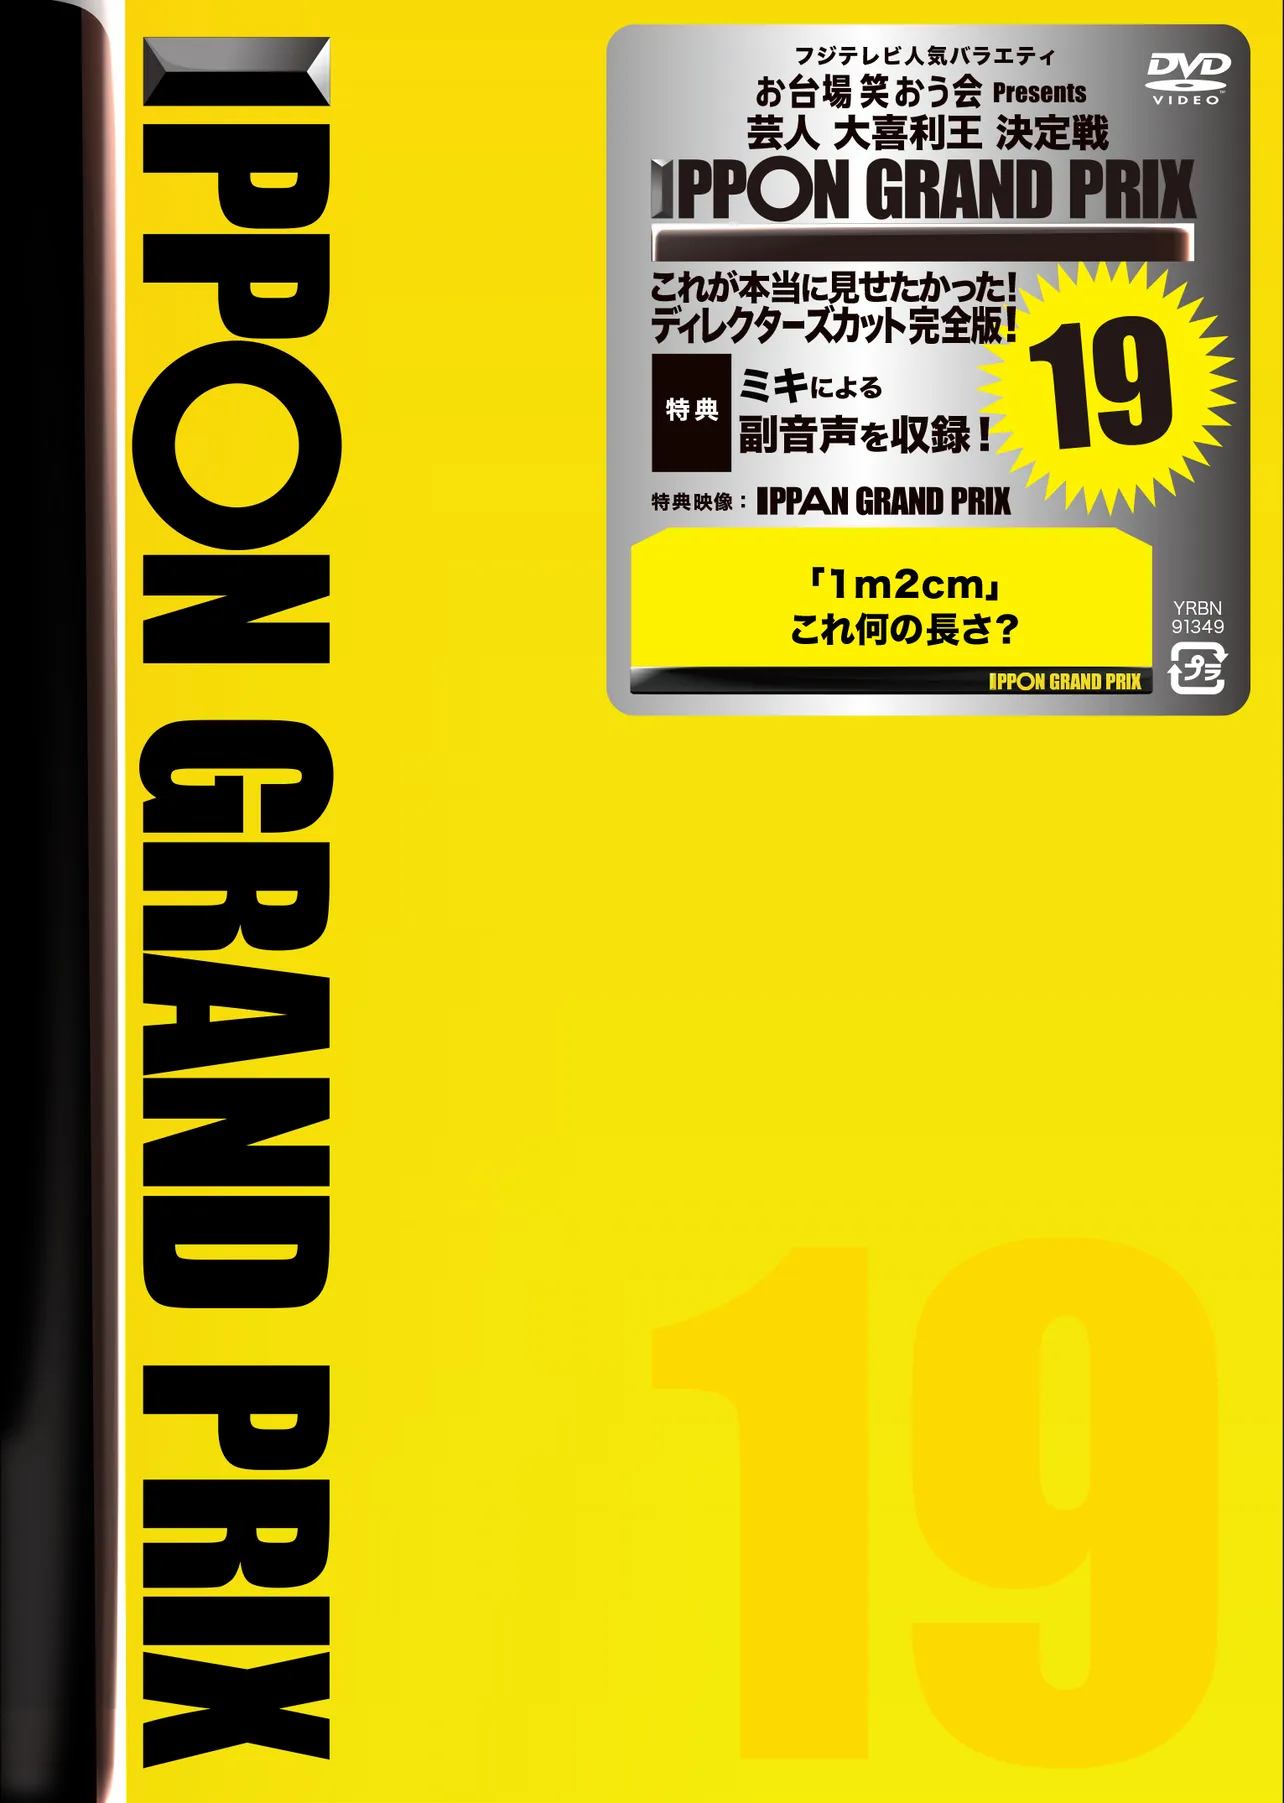 DVD「IPPONグランプリ19」ジャケット